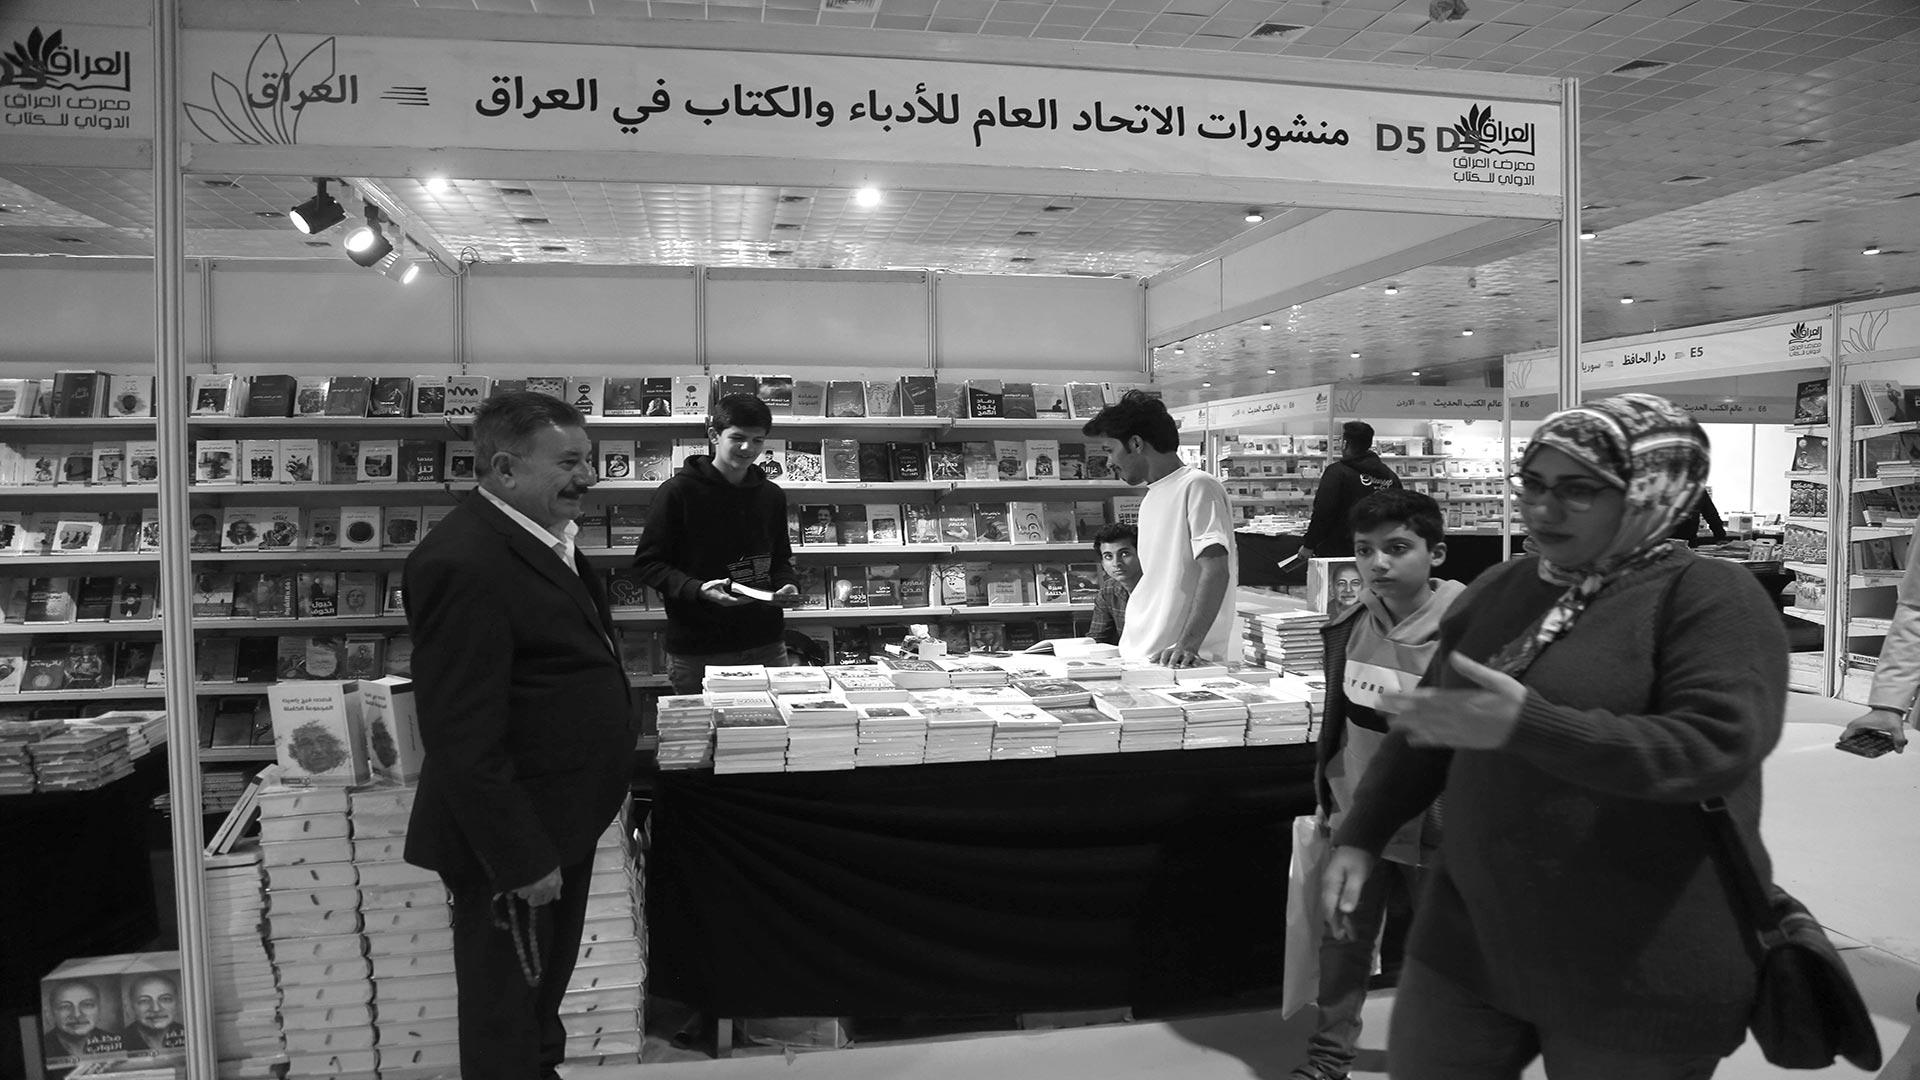 دور النشر العراقية: منشورات اتحاد الأدباء تزين معرض الكتاب بإصداراتها الحديثة